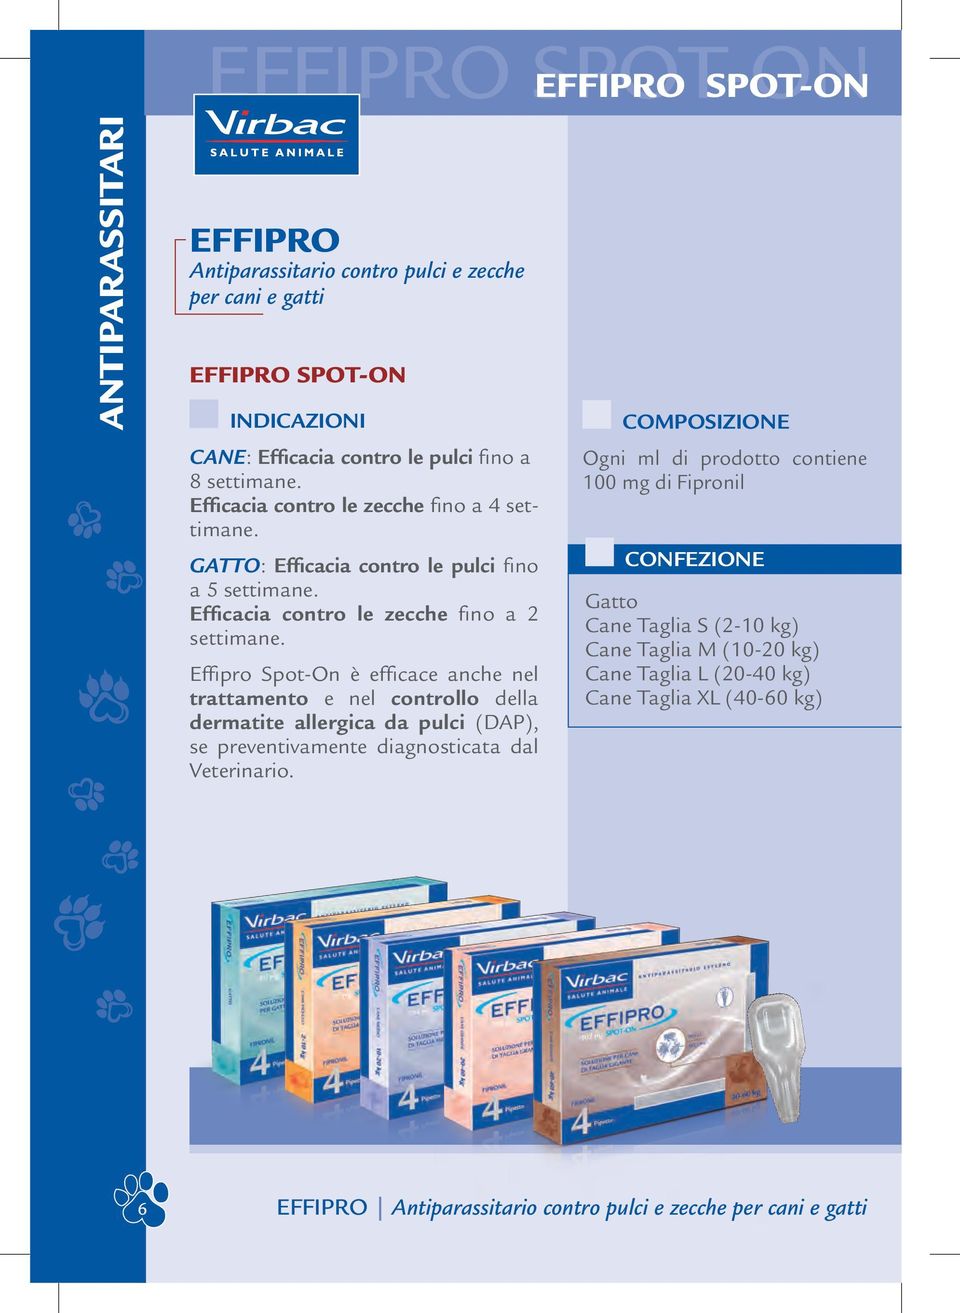 Effipro Spot-On è efficace anche nel trattamento e nel controllo della dermatite allergica da pulci (DAP), se preventivamente diagnosticata dal Veterinario.